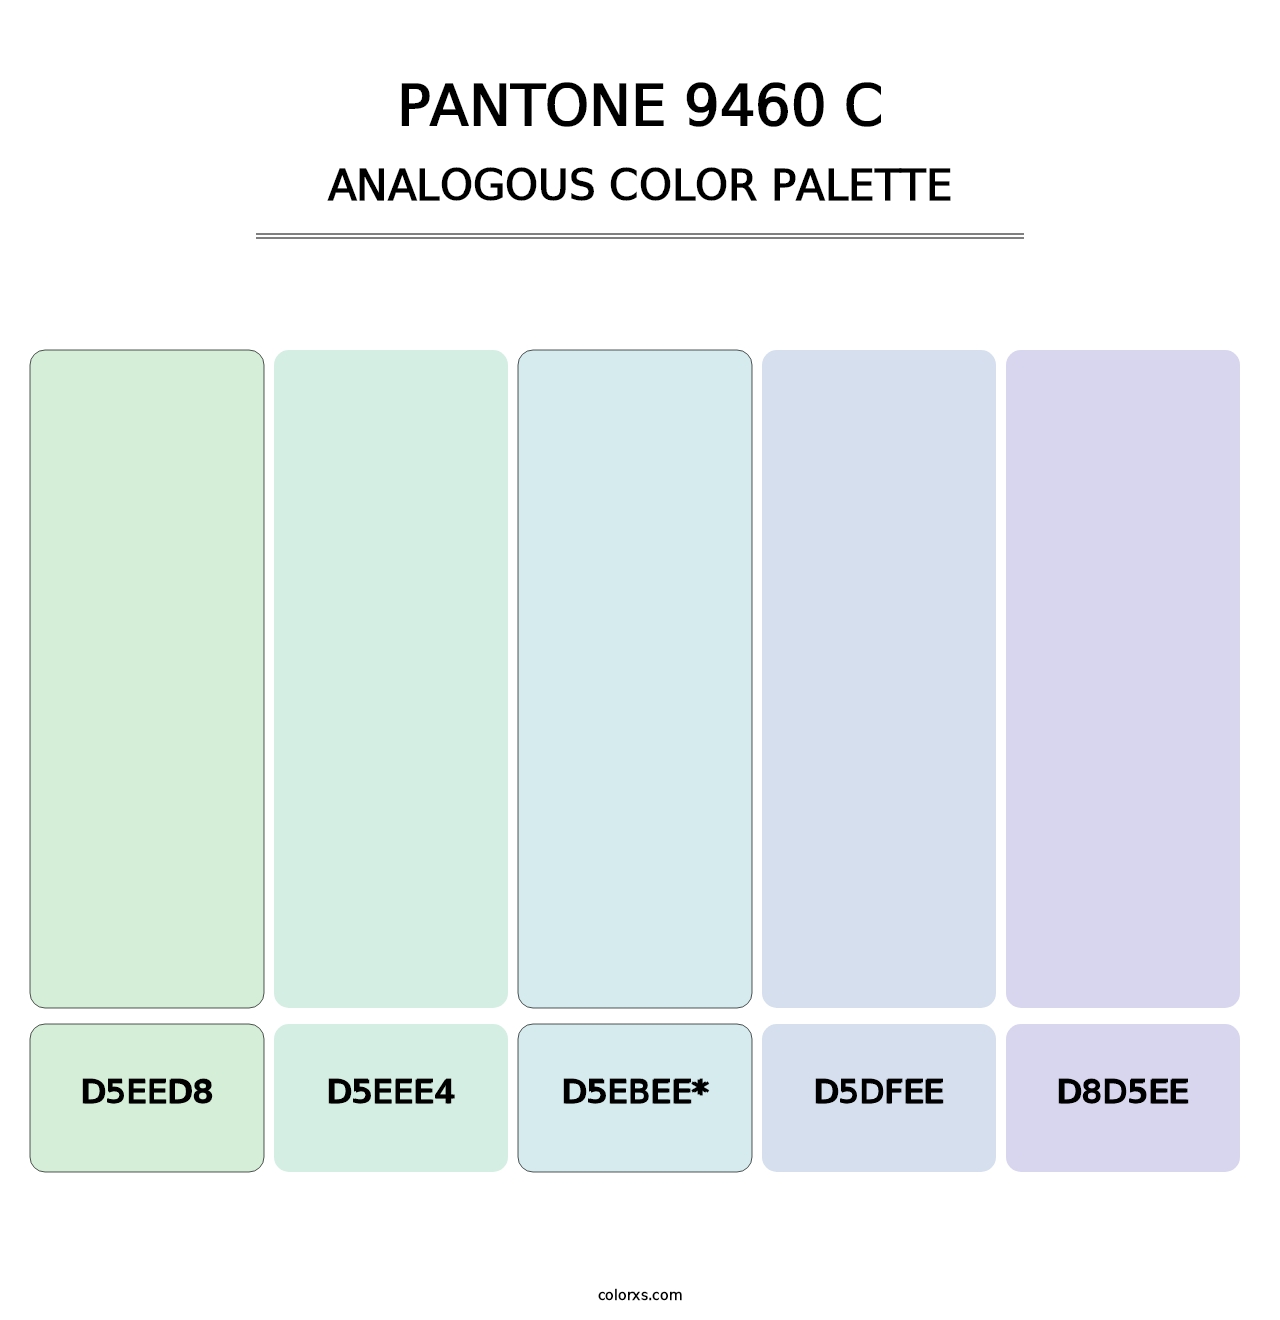 PANTONE 9460 C - Analogous Color Palette